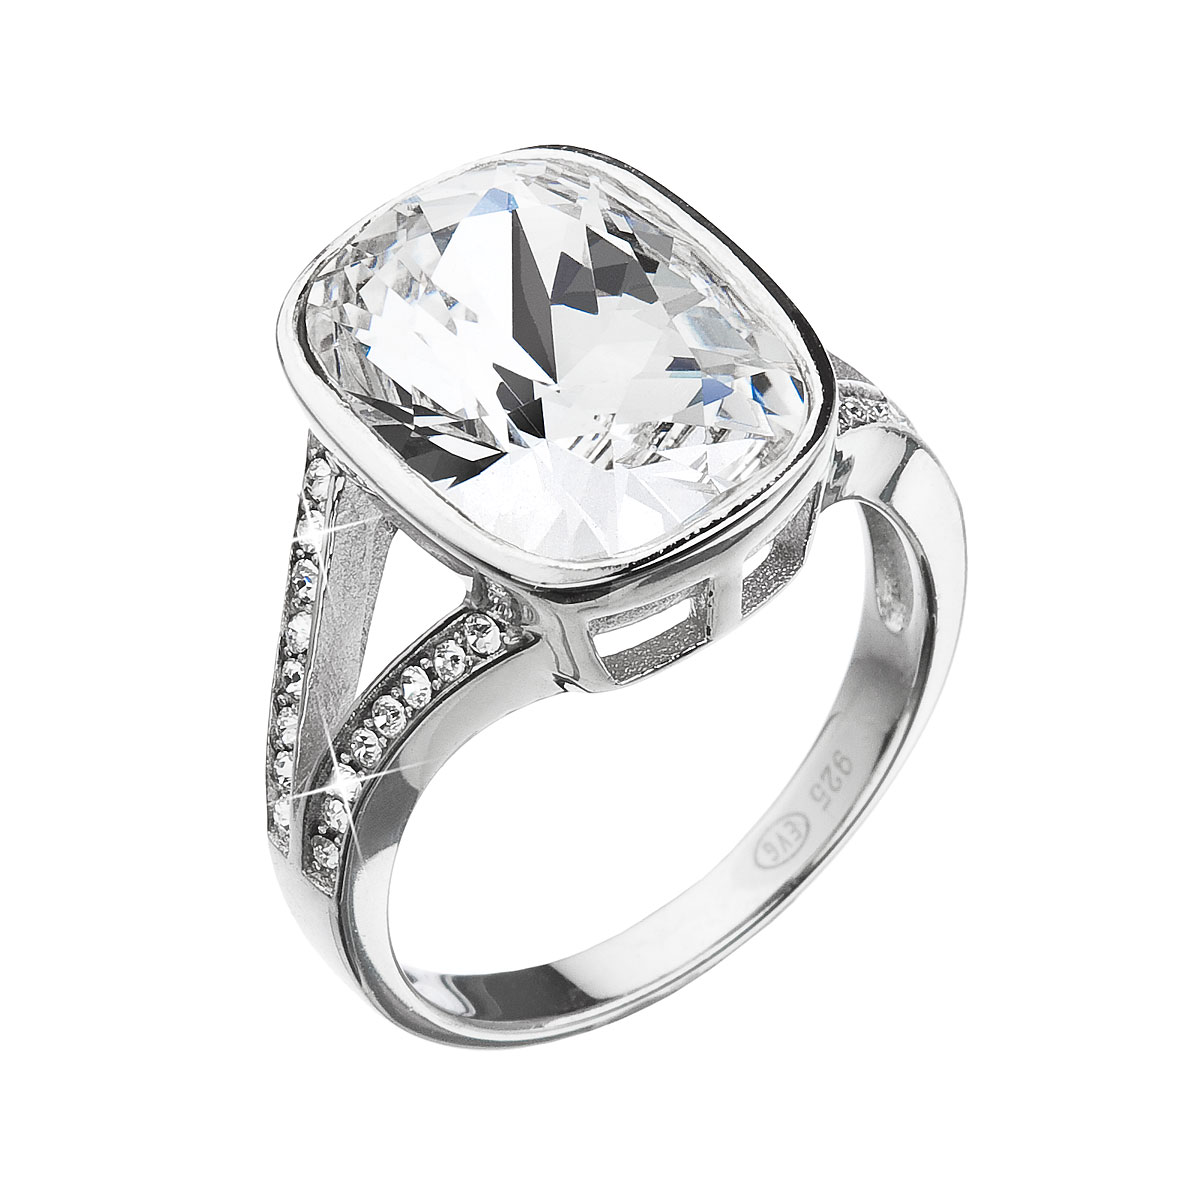 Evolution Group Stříbrný prsten s krystaly Swarovski bílý obdélník 35051.1